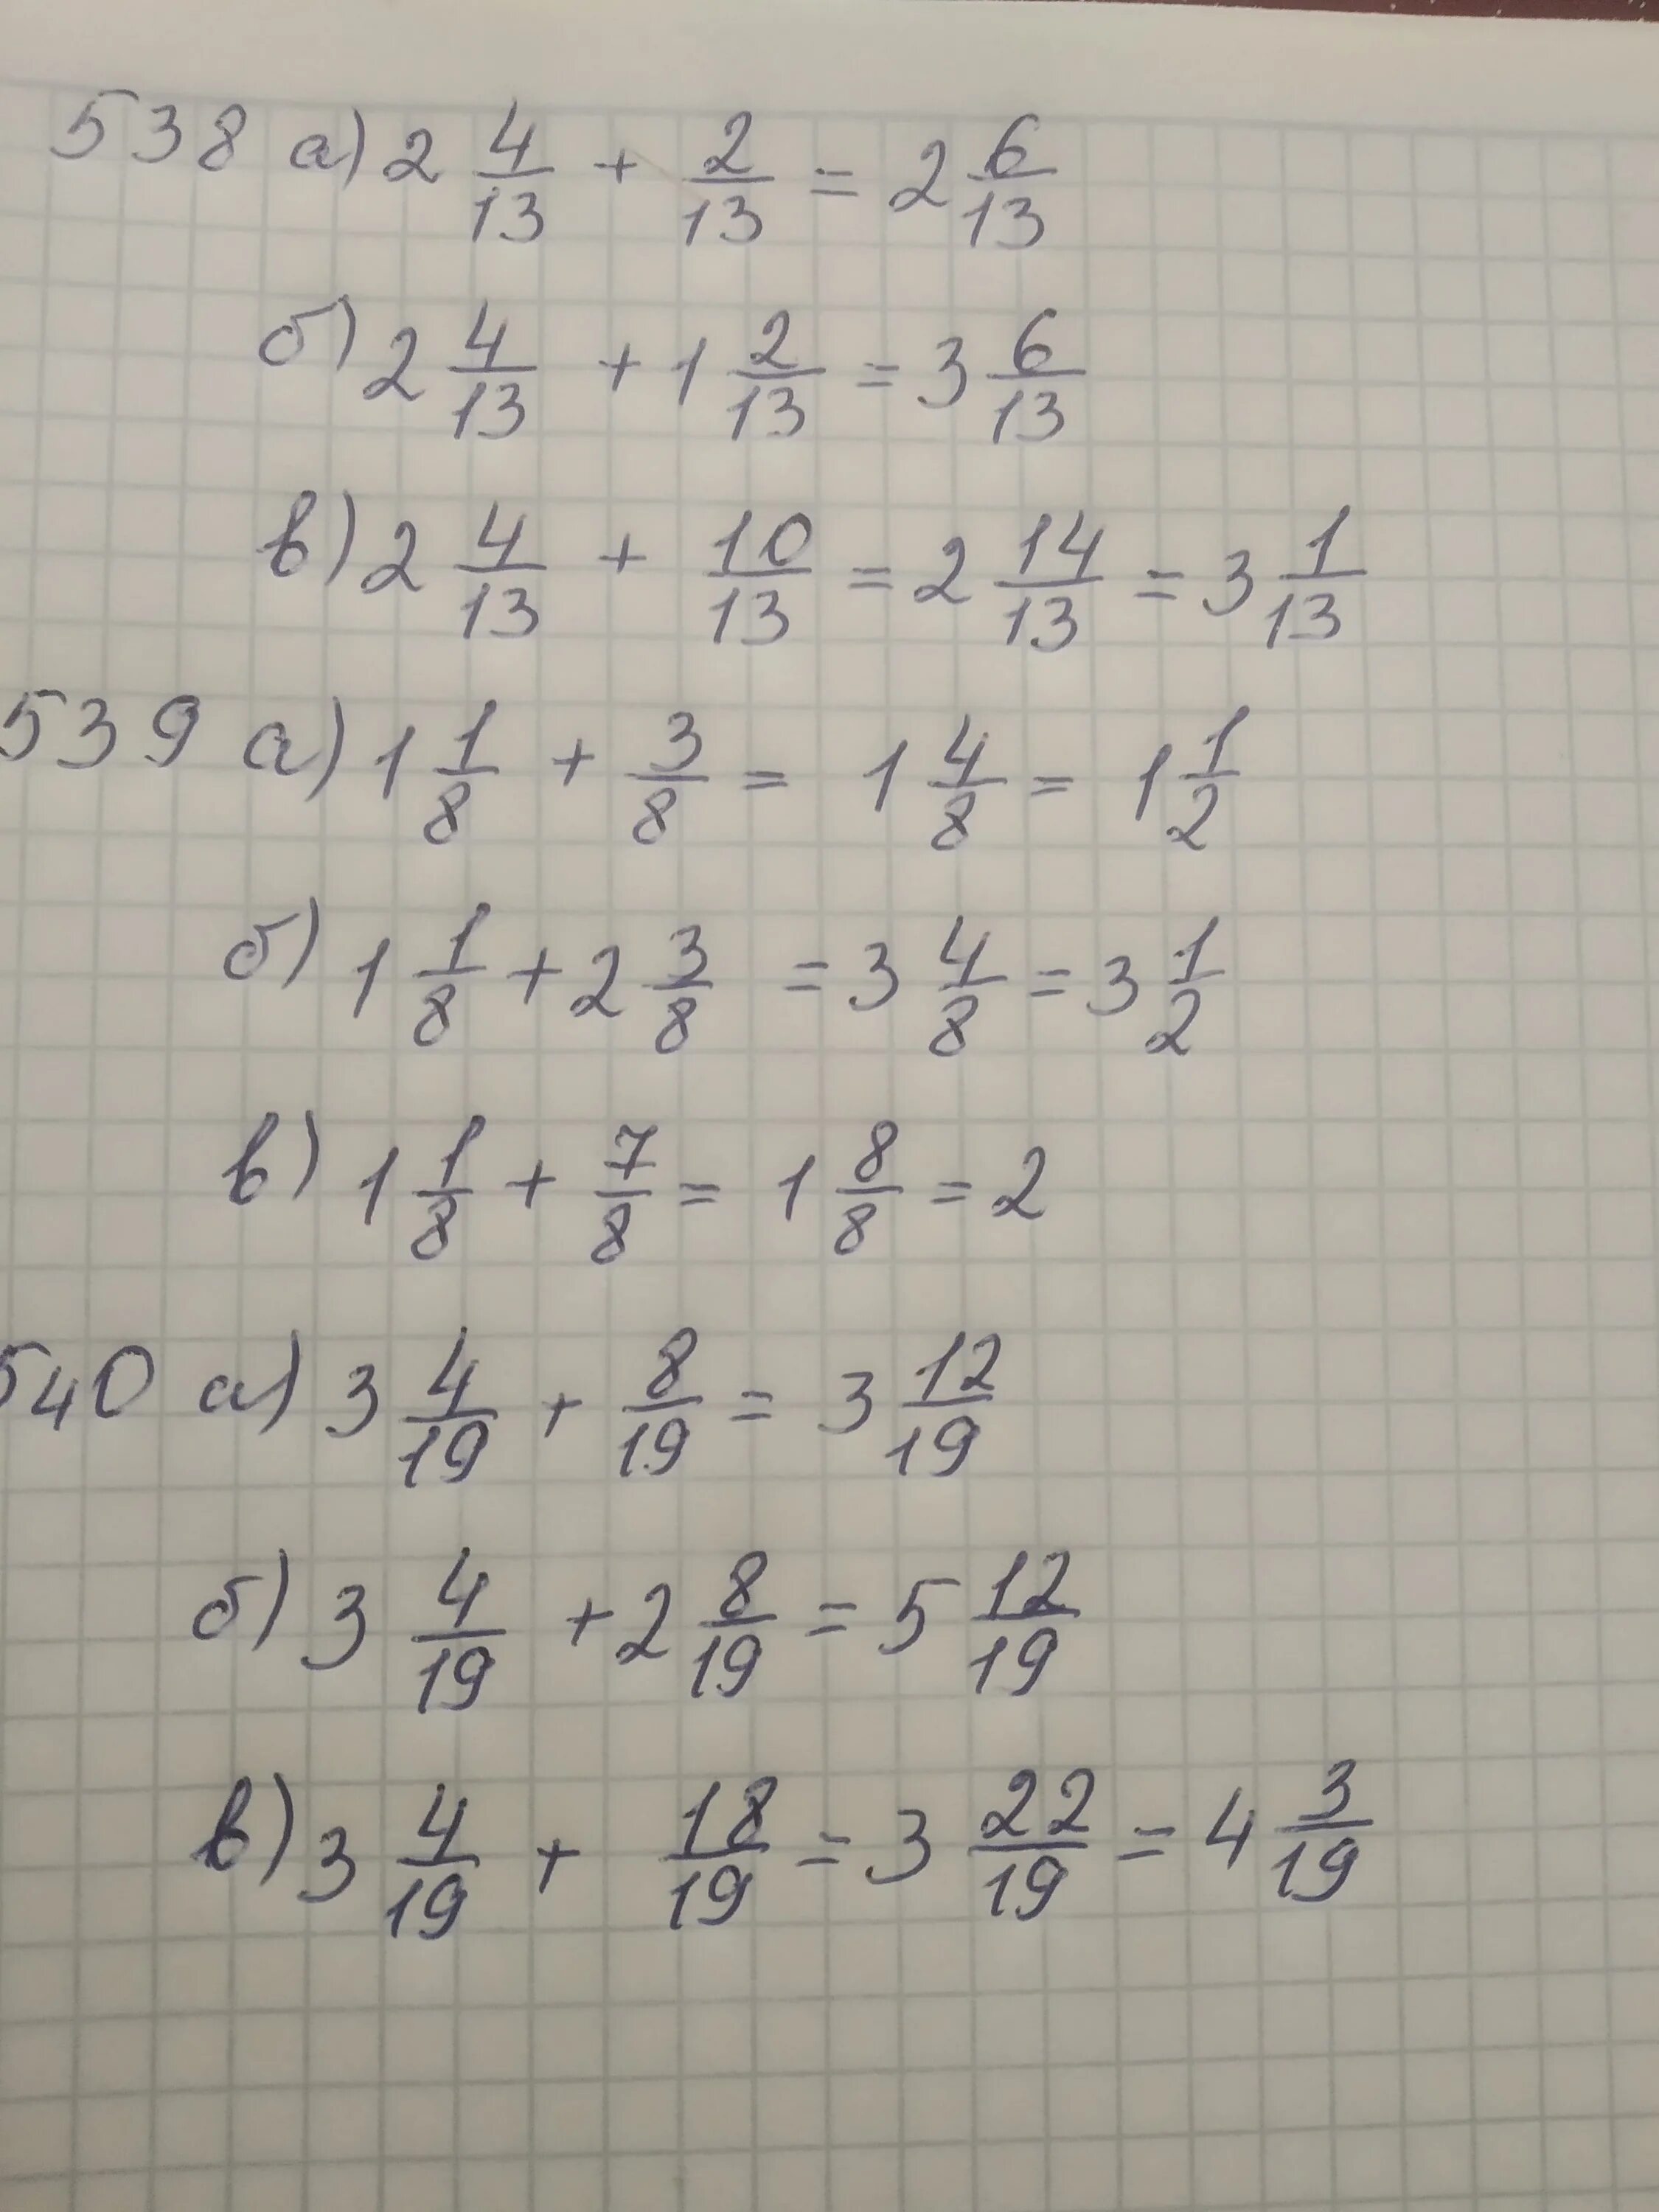 7 12 13 ответ. 4т12ц+34ц340кг решение. 3ц1/9-2ц4/9=. 2ц.3/7-1ц.4/4. (2ц1/3-2ц5/6):1ц1/6+5ц3/14=.